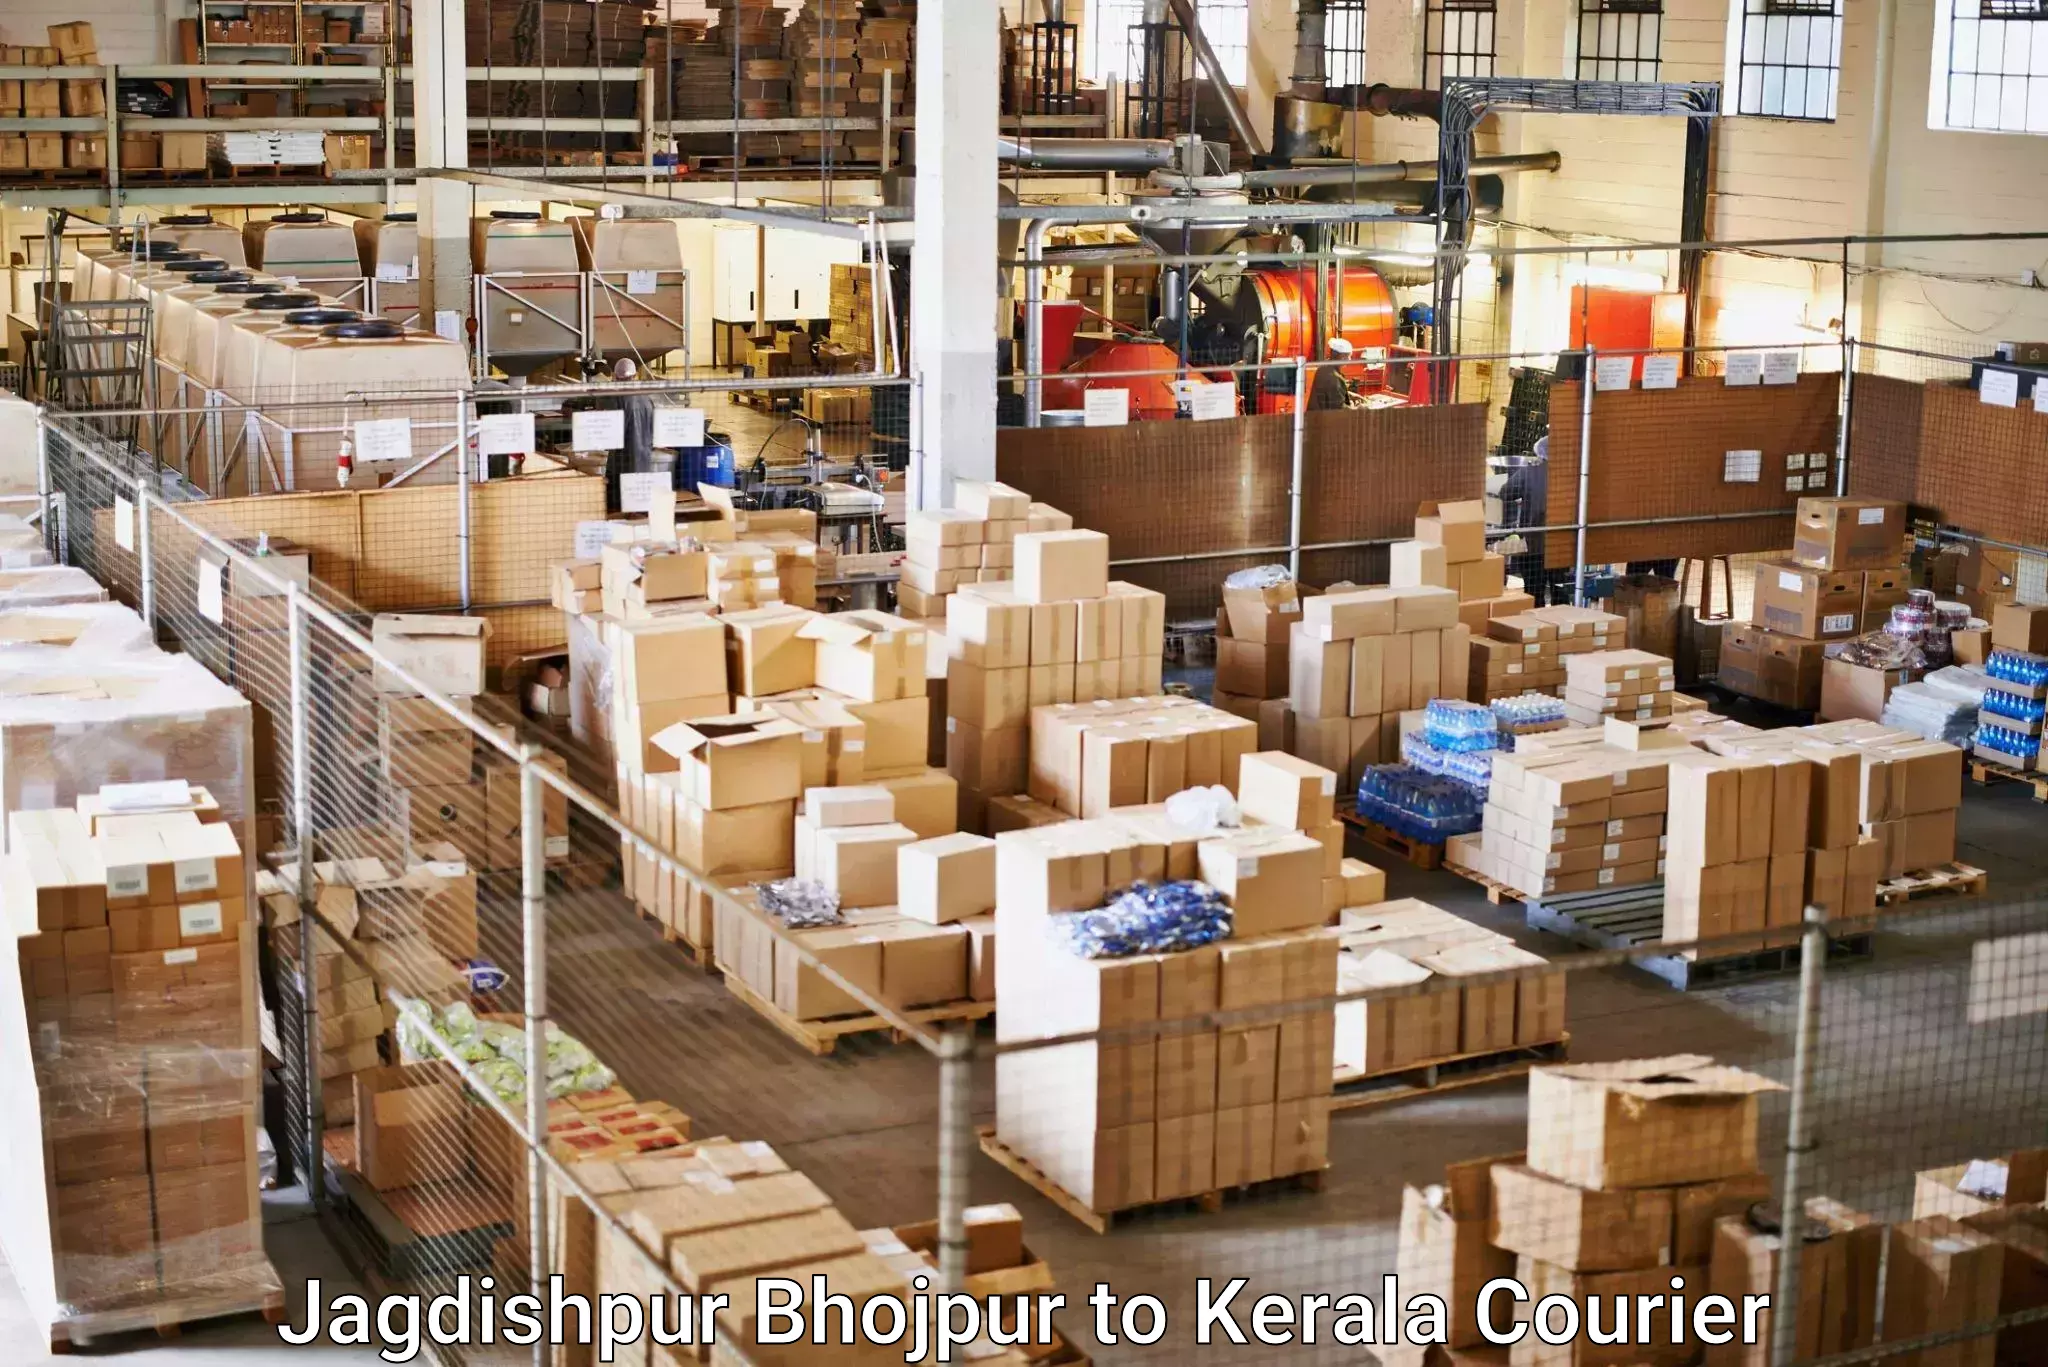 International parcel service Jagdishpur Bhojpur to Guruvayur